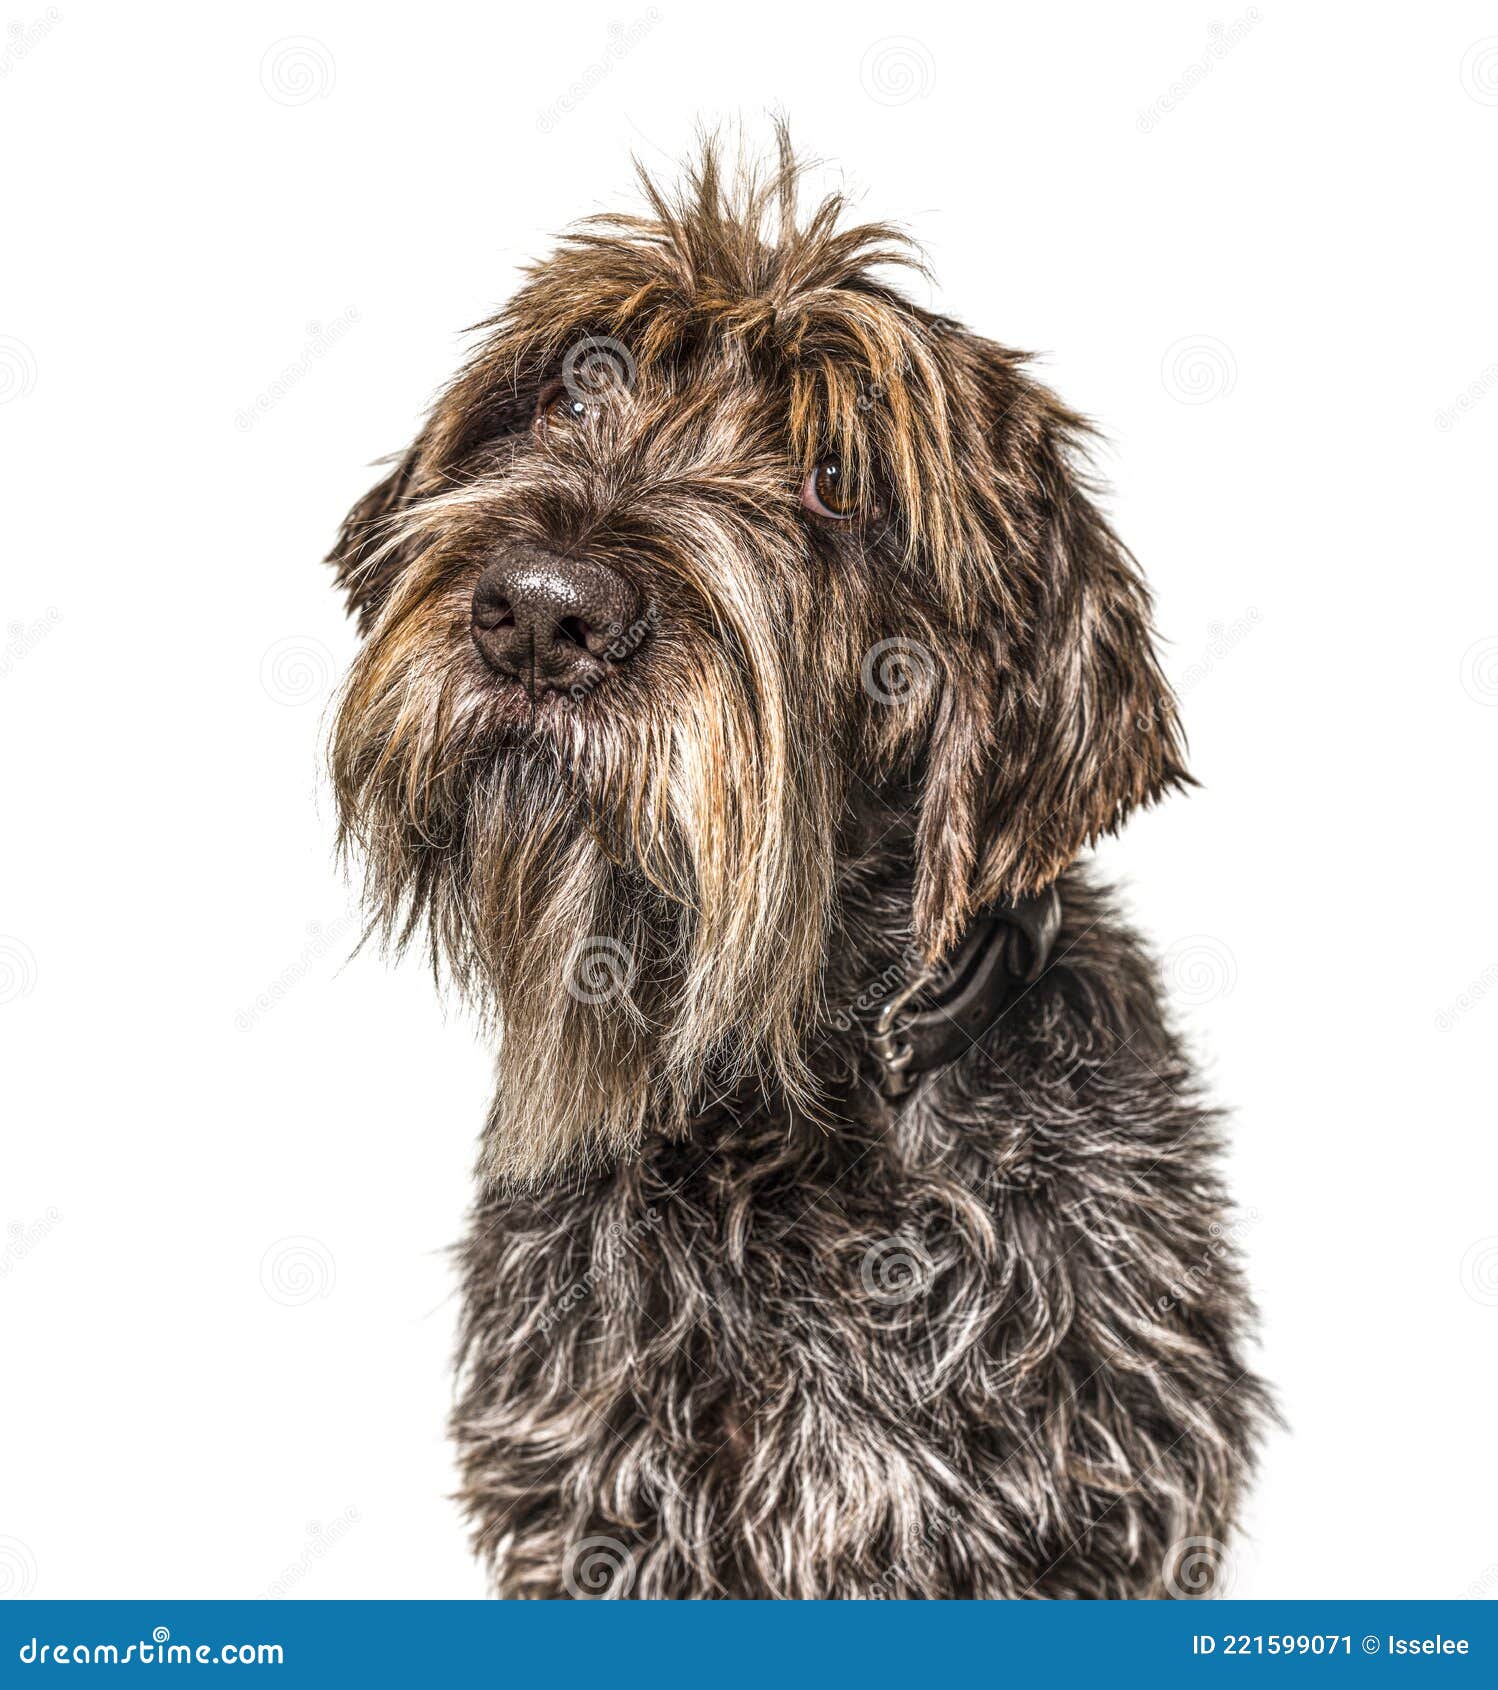 head shot of a shaggy dog, korthals griffon, 